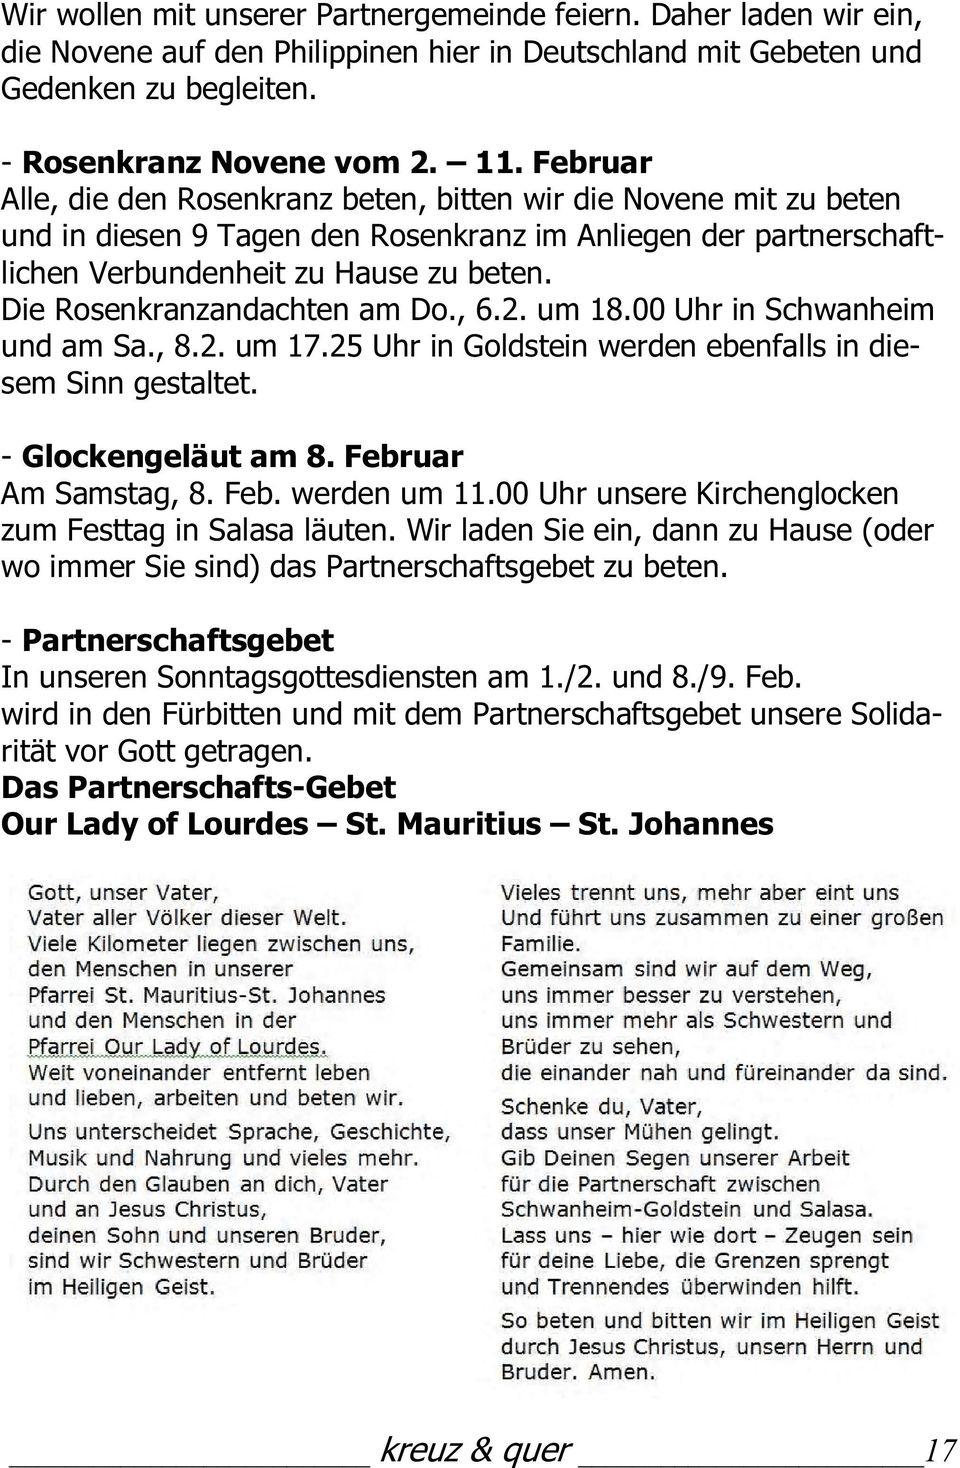 Die Rosenkranzandachten am Do., 6.2. um 18.00 Uhr in Schwanheim und am Sa., 8.2. um 17.25 Uhr in Goldstein werden ebenfalls in diesem Sinn gestaltet. - Glockengeläut am 8. Februar Am Samstag, 8. Feb. werden um 11.